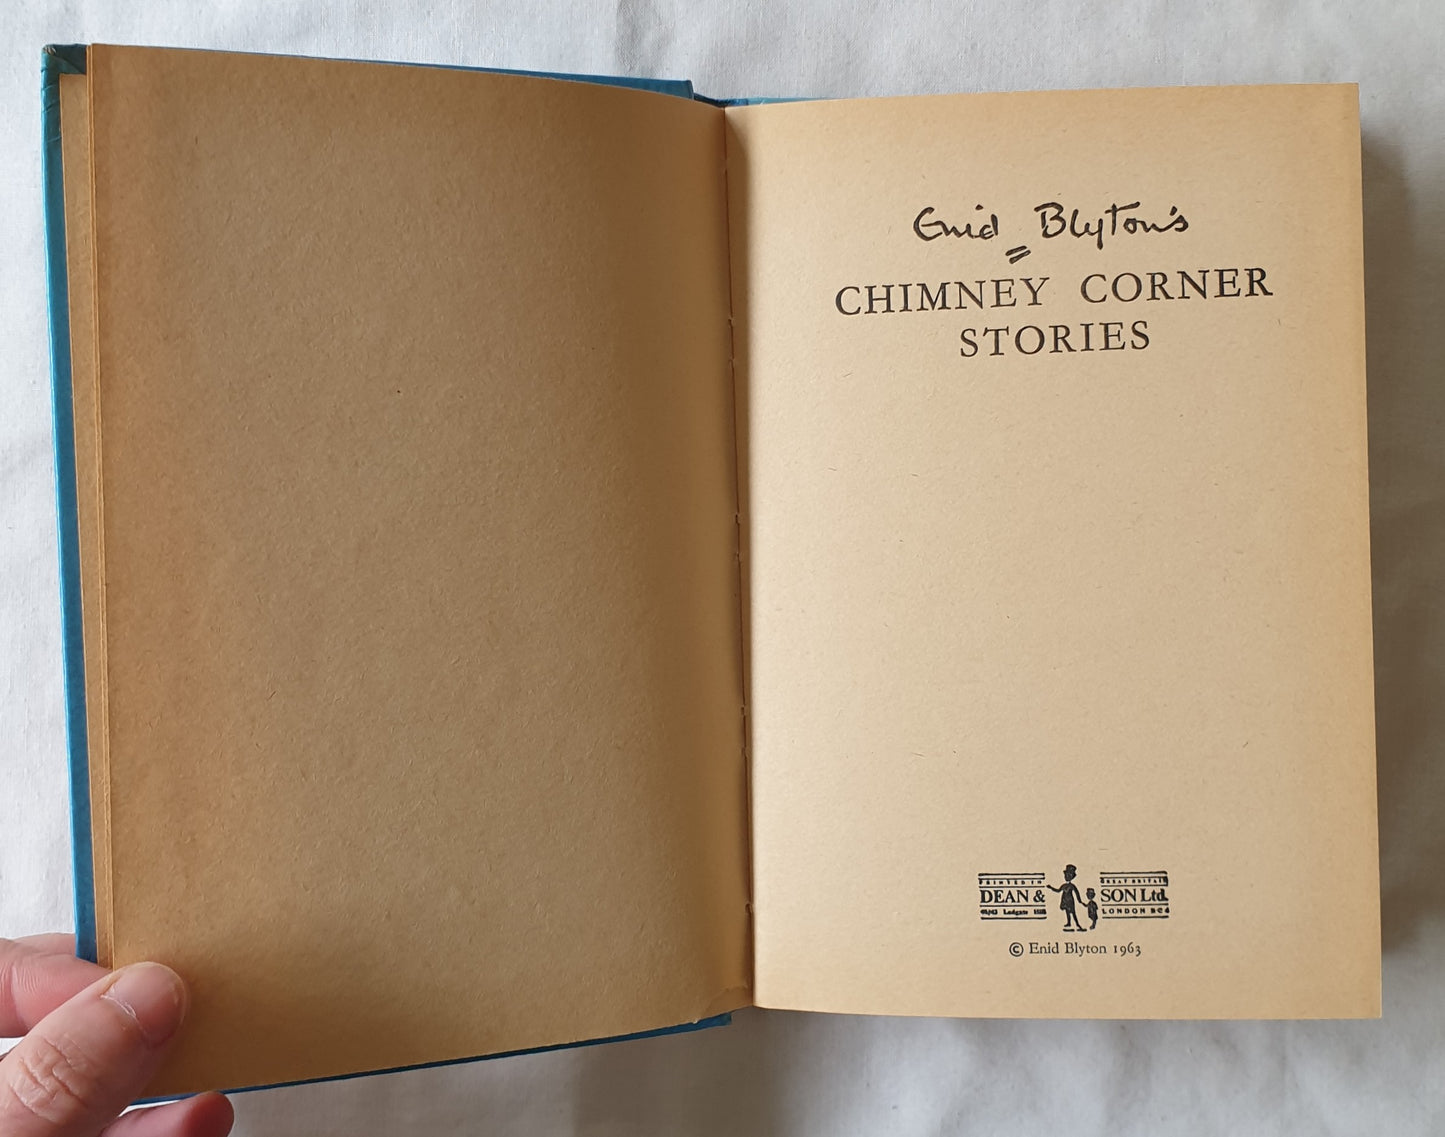 Chimney Corner Stories by Enid Blyton